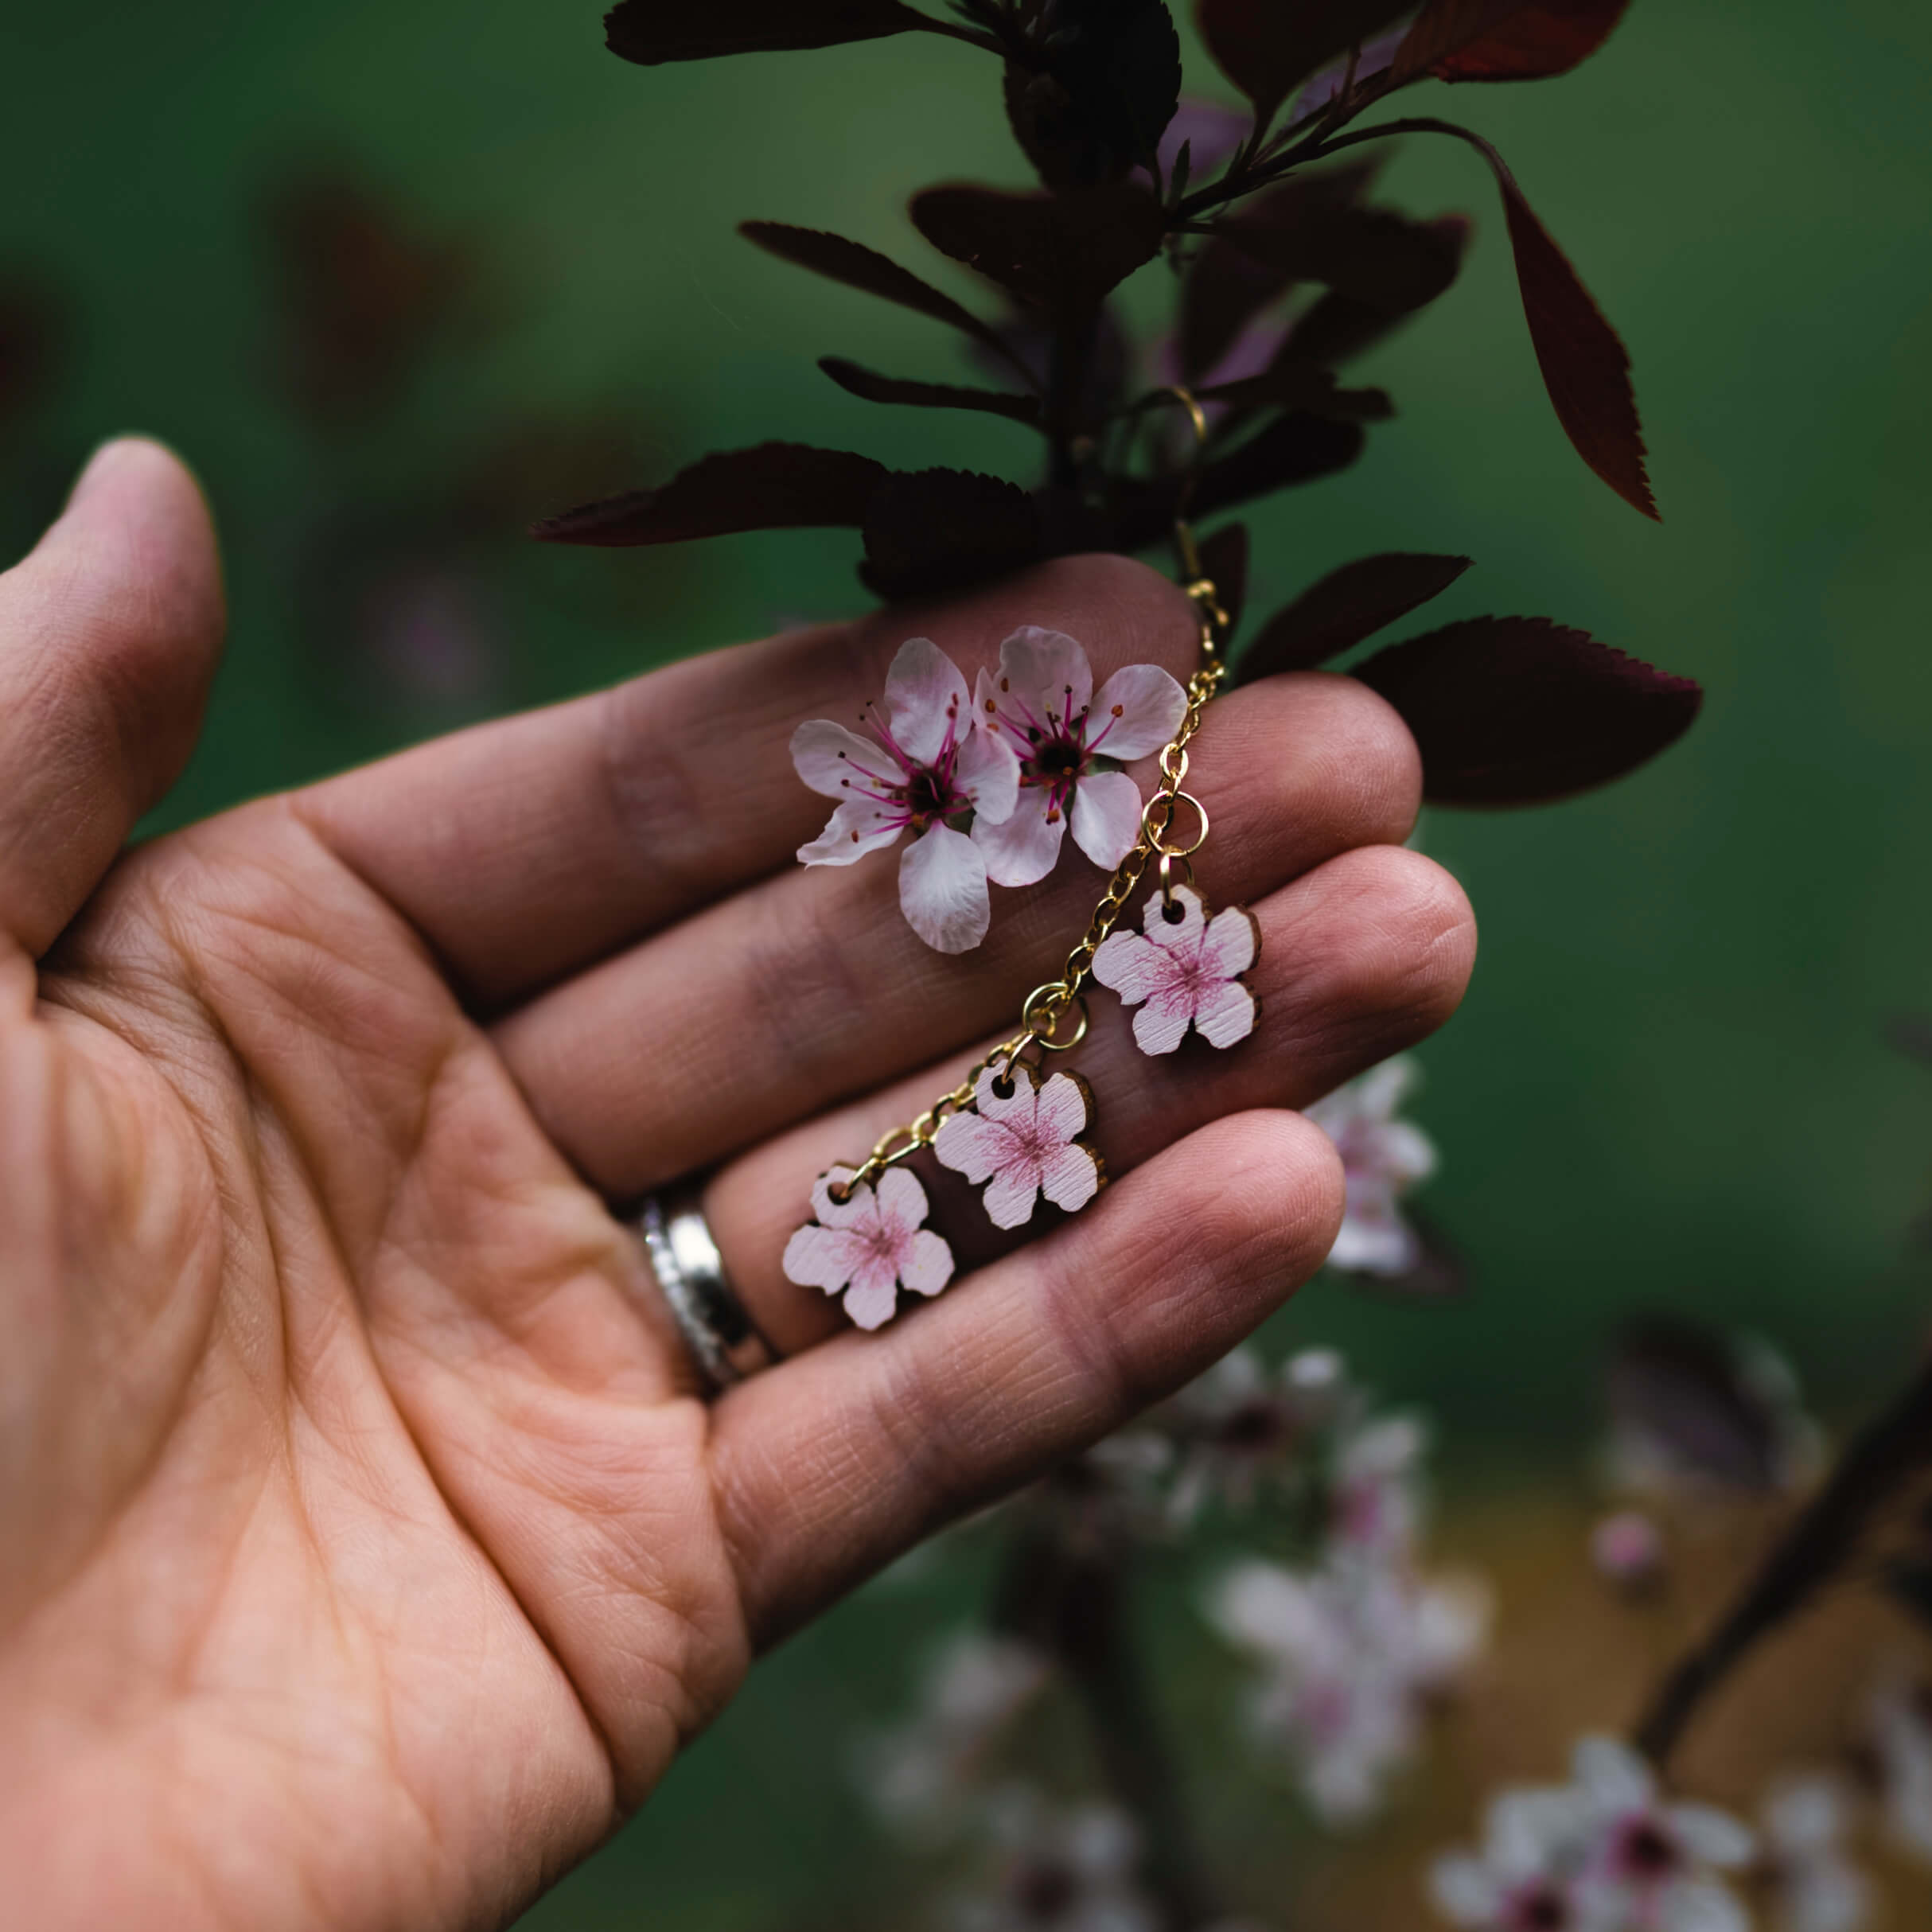 3 pienta sakuraa -korvakoru. Nämä kauniit pienet sakura-korvakorut leijailevat korvasi juurella hempeän vaaleanpunaisena ja viimeistelevät niin arki- kuin juhlailmeen. Rakkaudella käsintehty Suomessa.